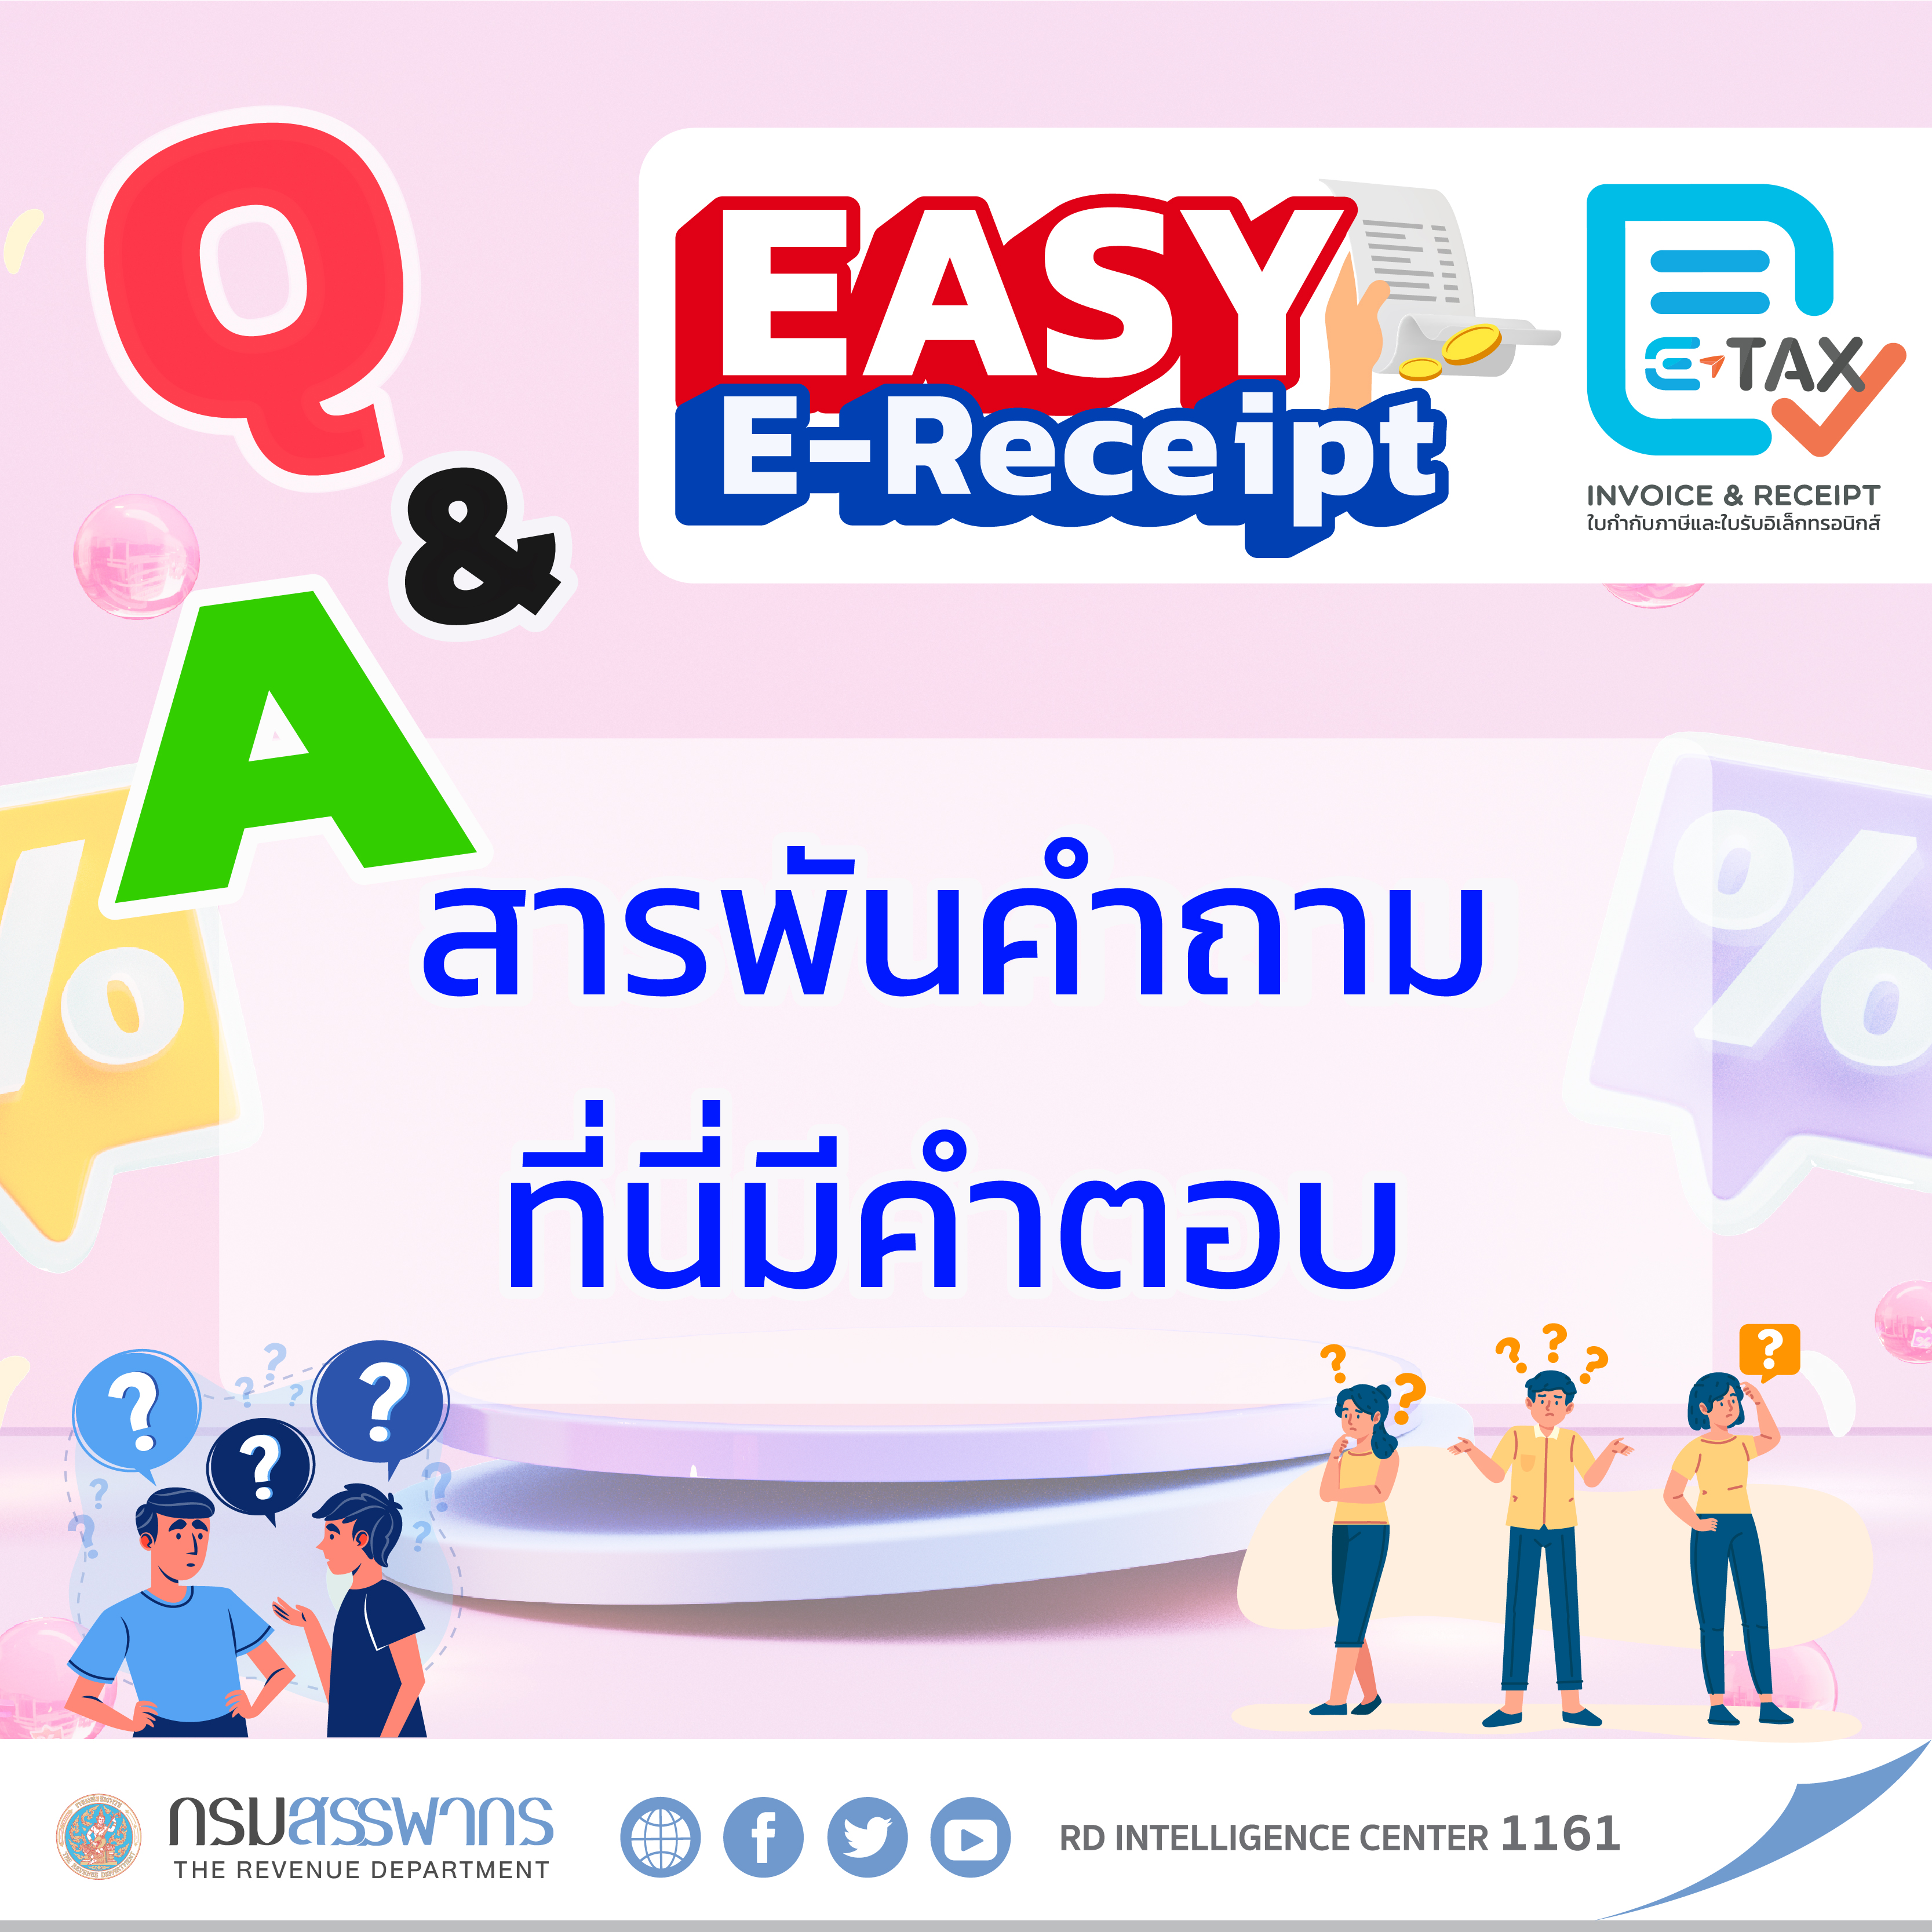 คำถาม-คำตอบ (Q&A) มาตรการ “Easy E-Receipt”